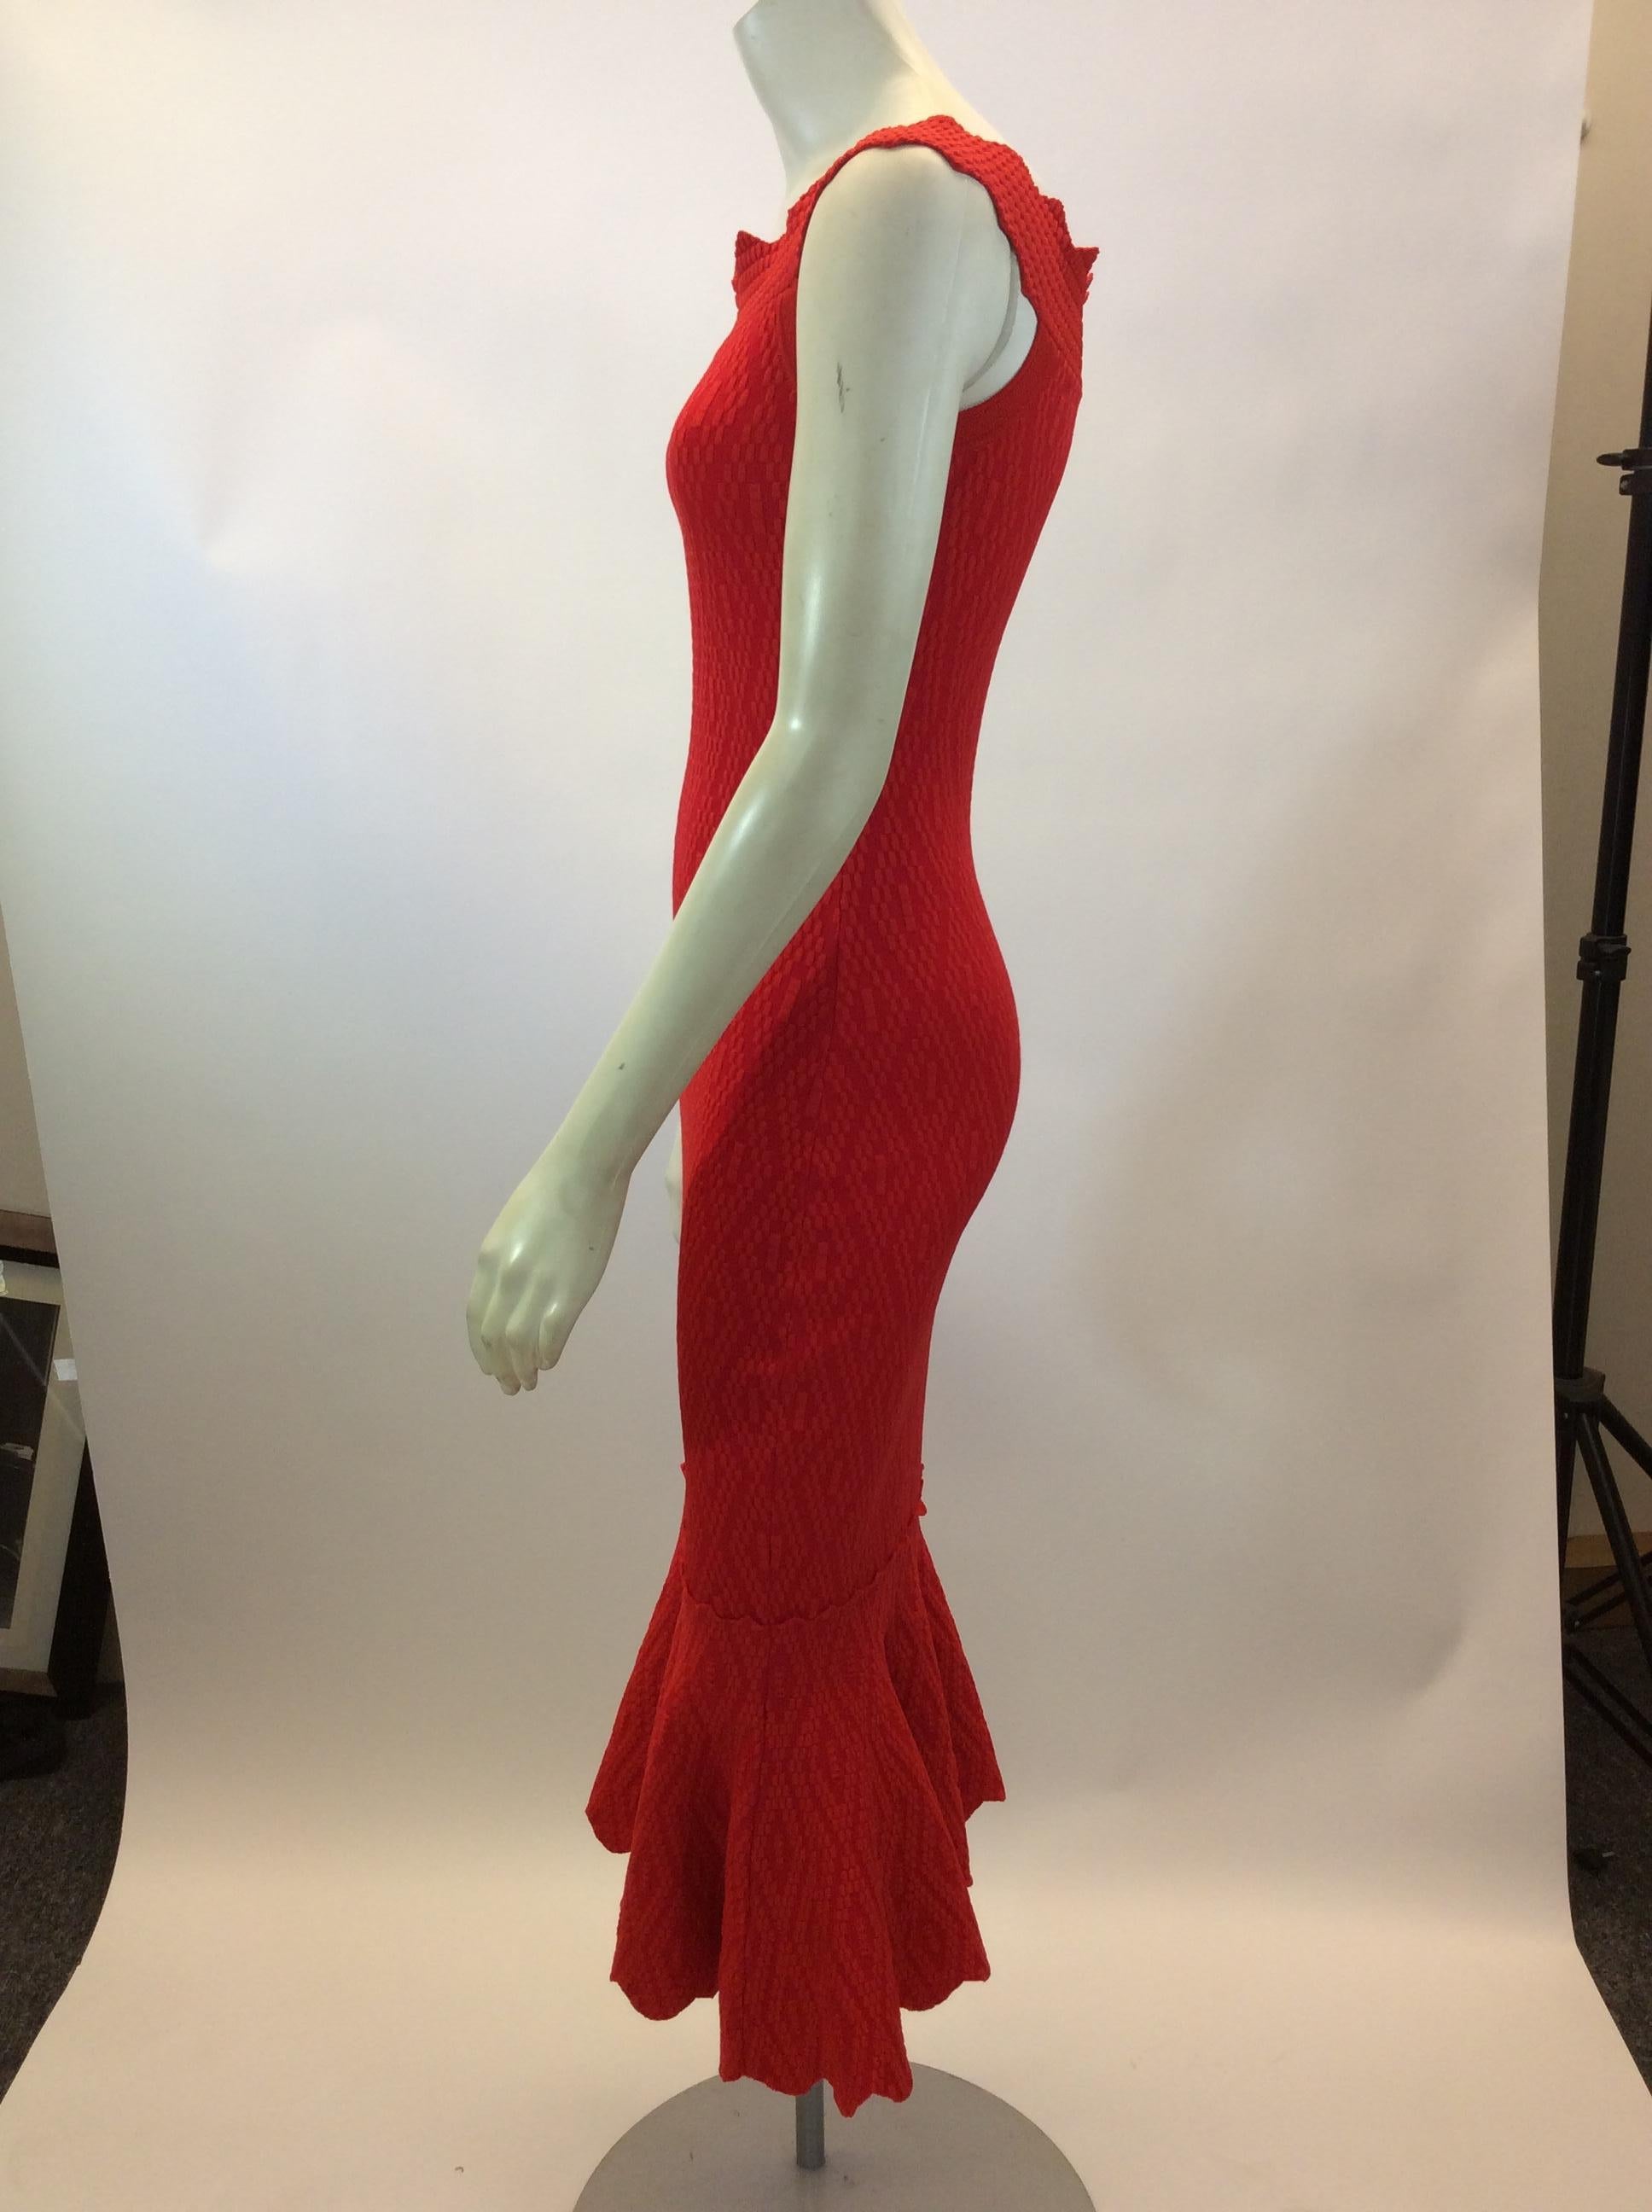 Jonathan Simkhai Red Knit Dress
$350
Made in China
54% Rayon, 42% Nylon, 4% Nylon
Size XS
Length 46